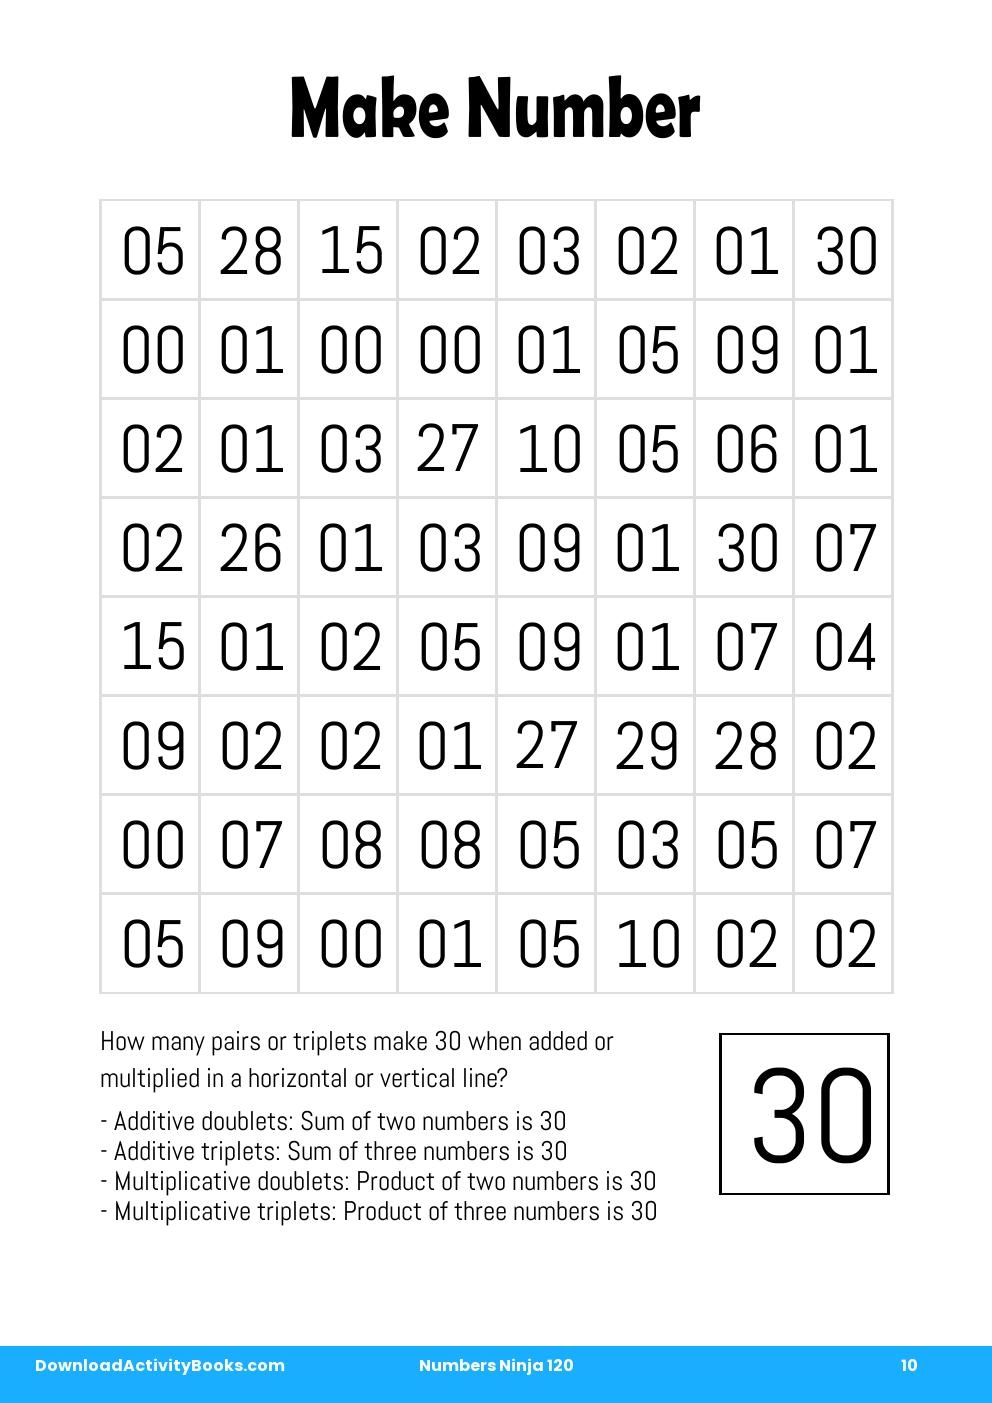 Make Number in Numbers Ninja 120